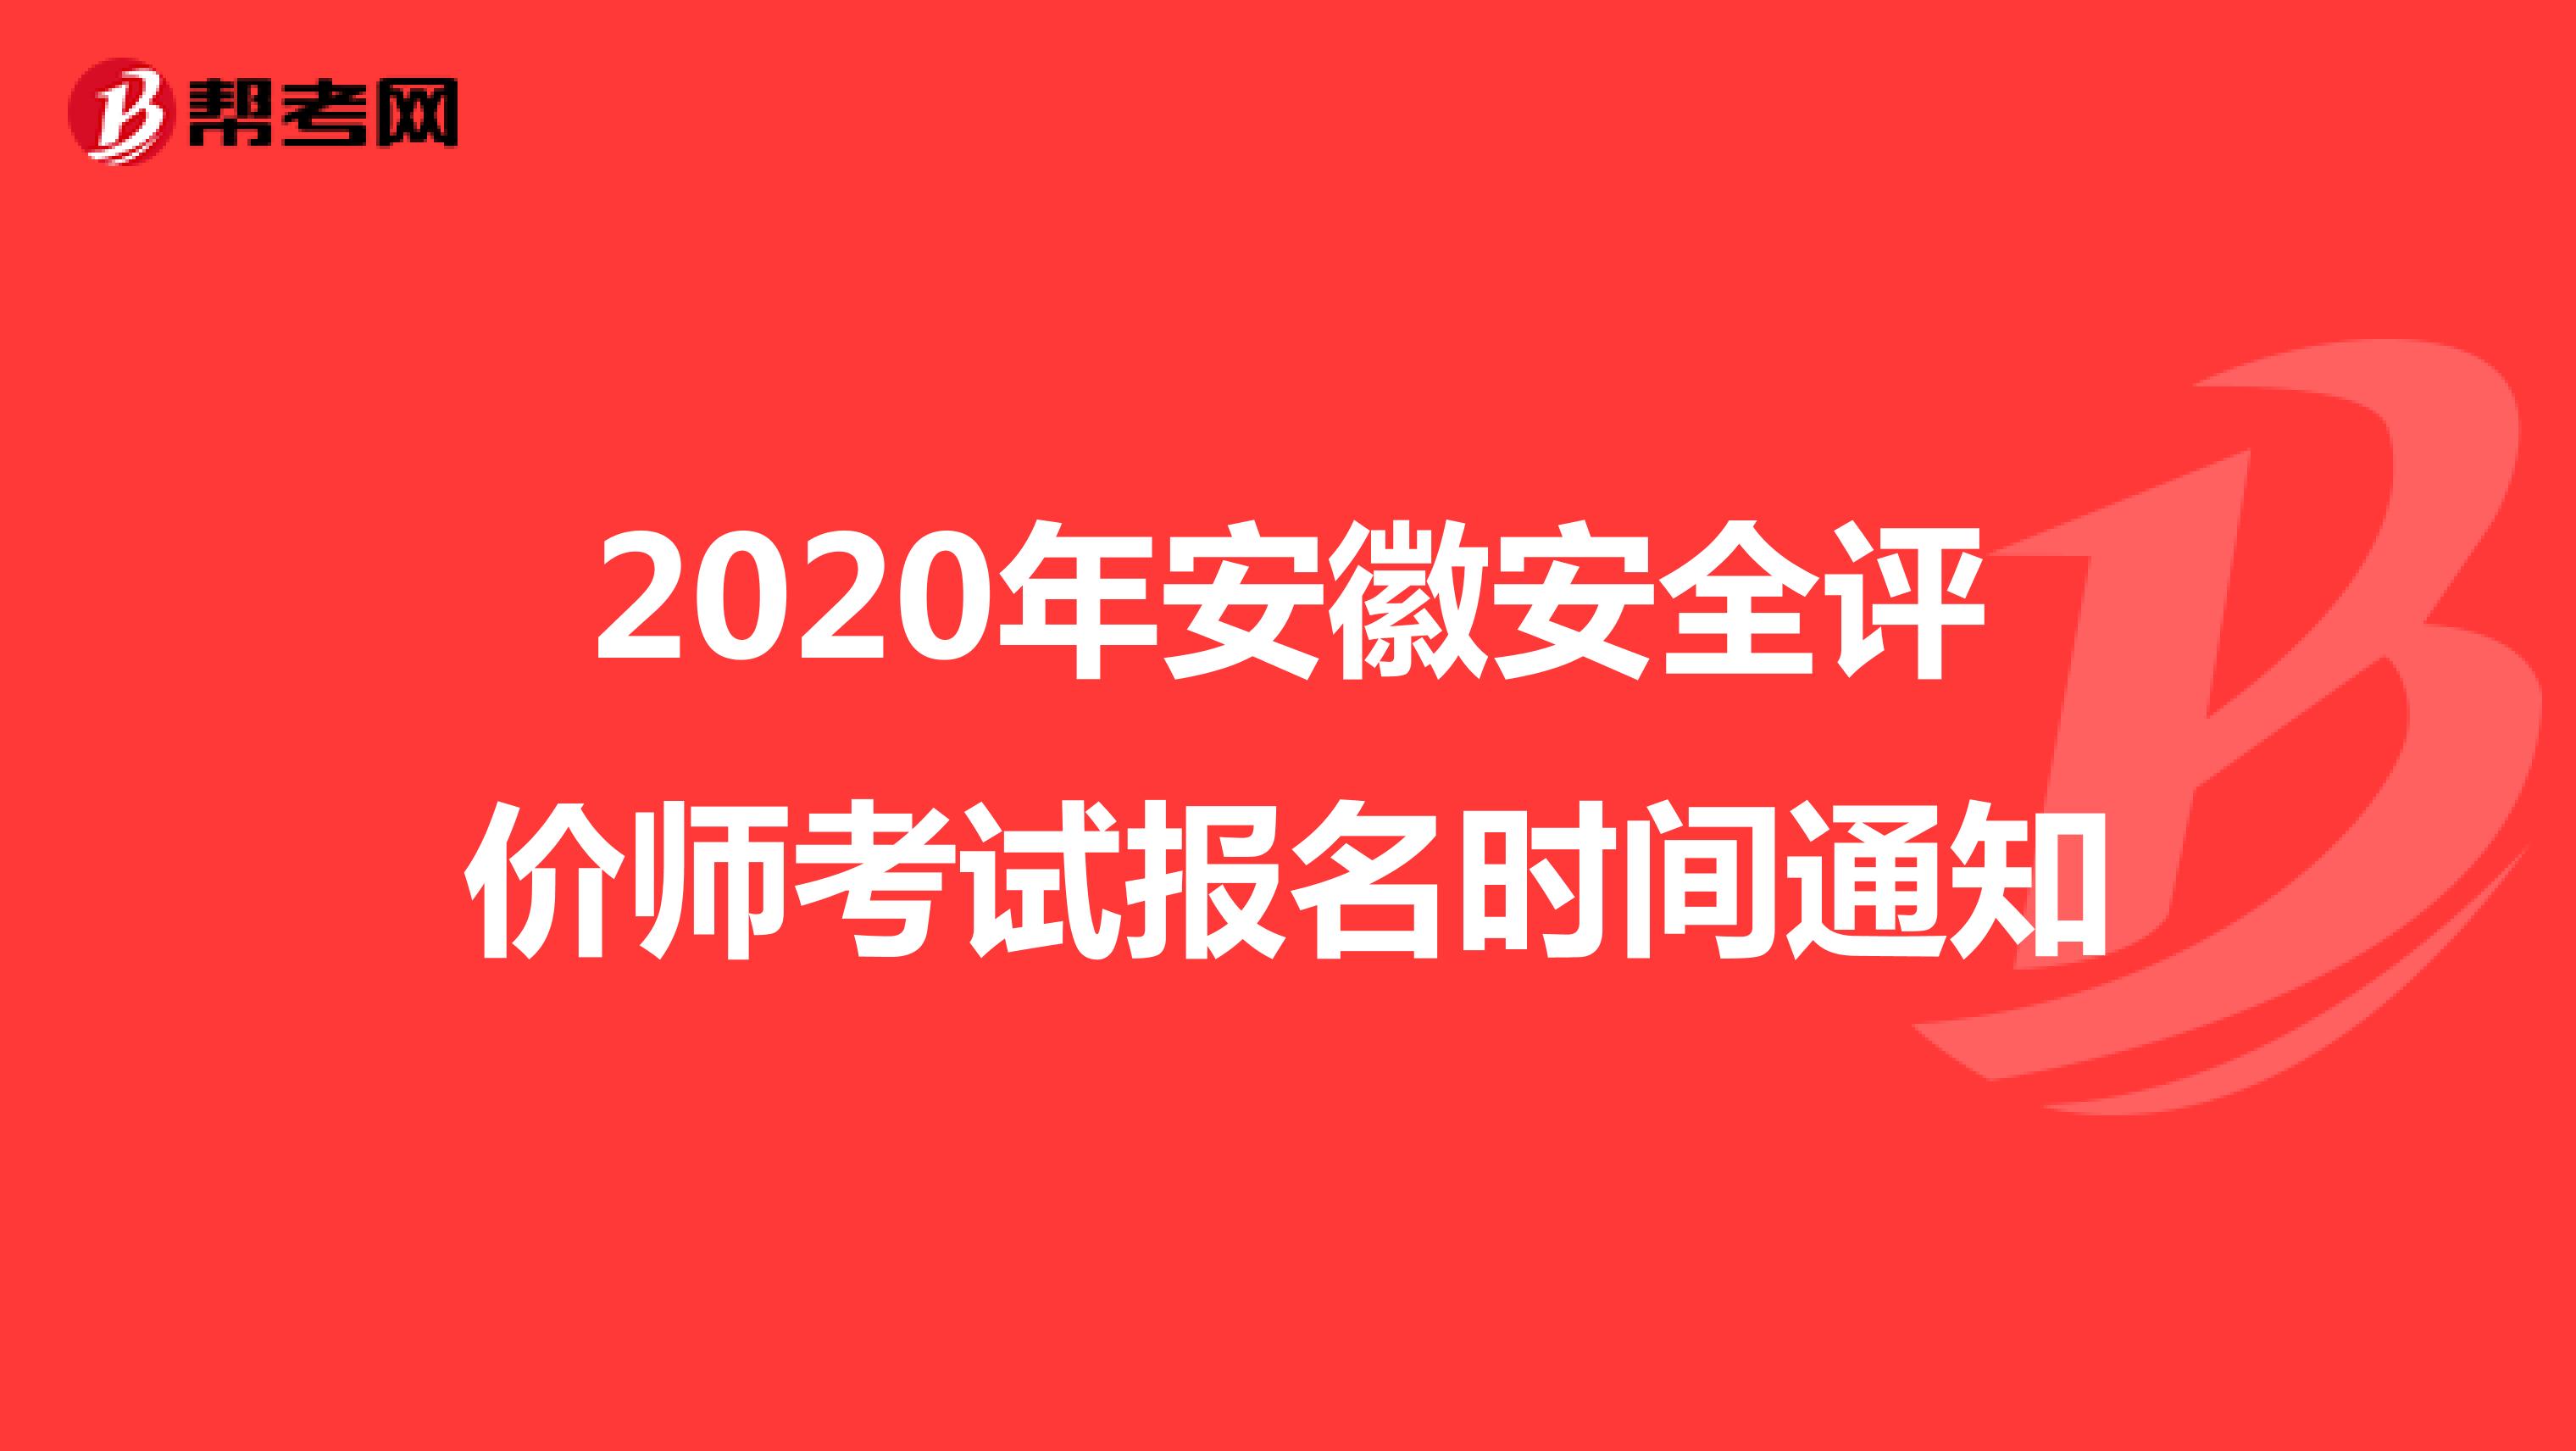 2020年安徽安全评价师考试报名时间通知